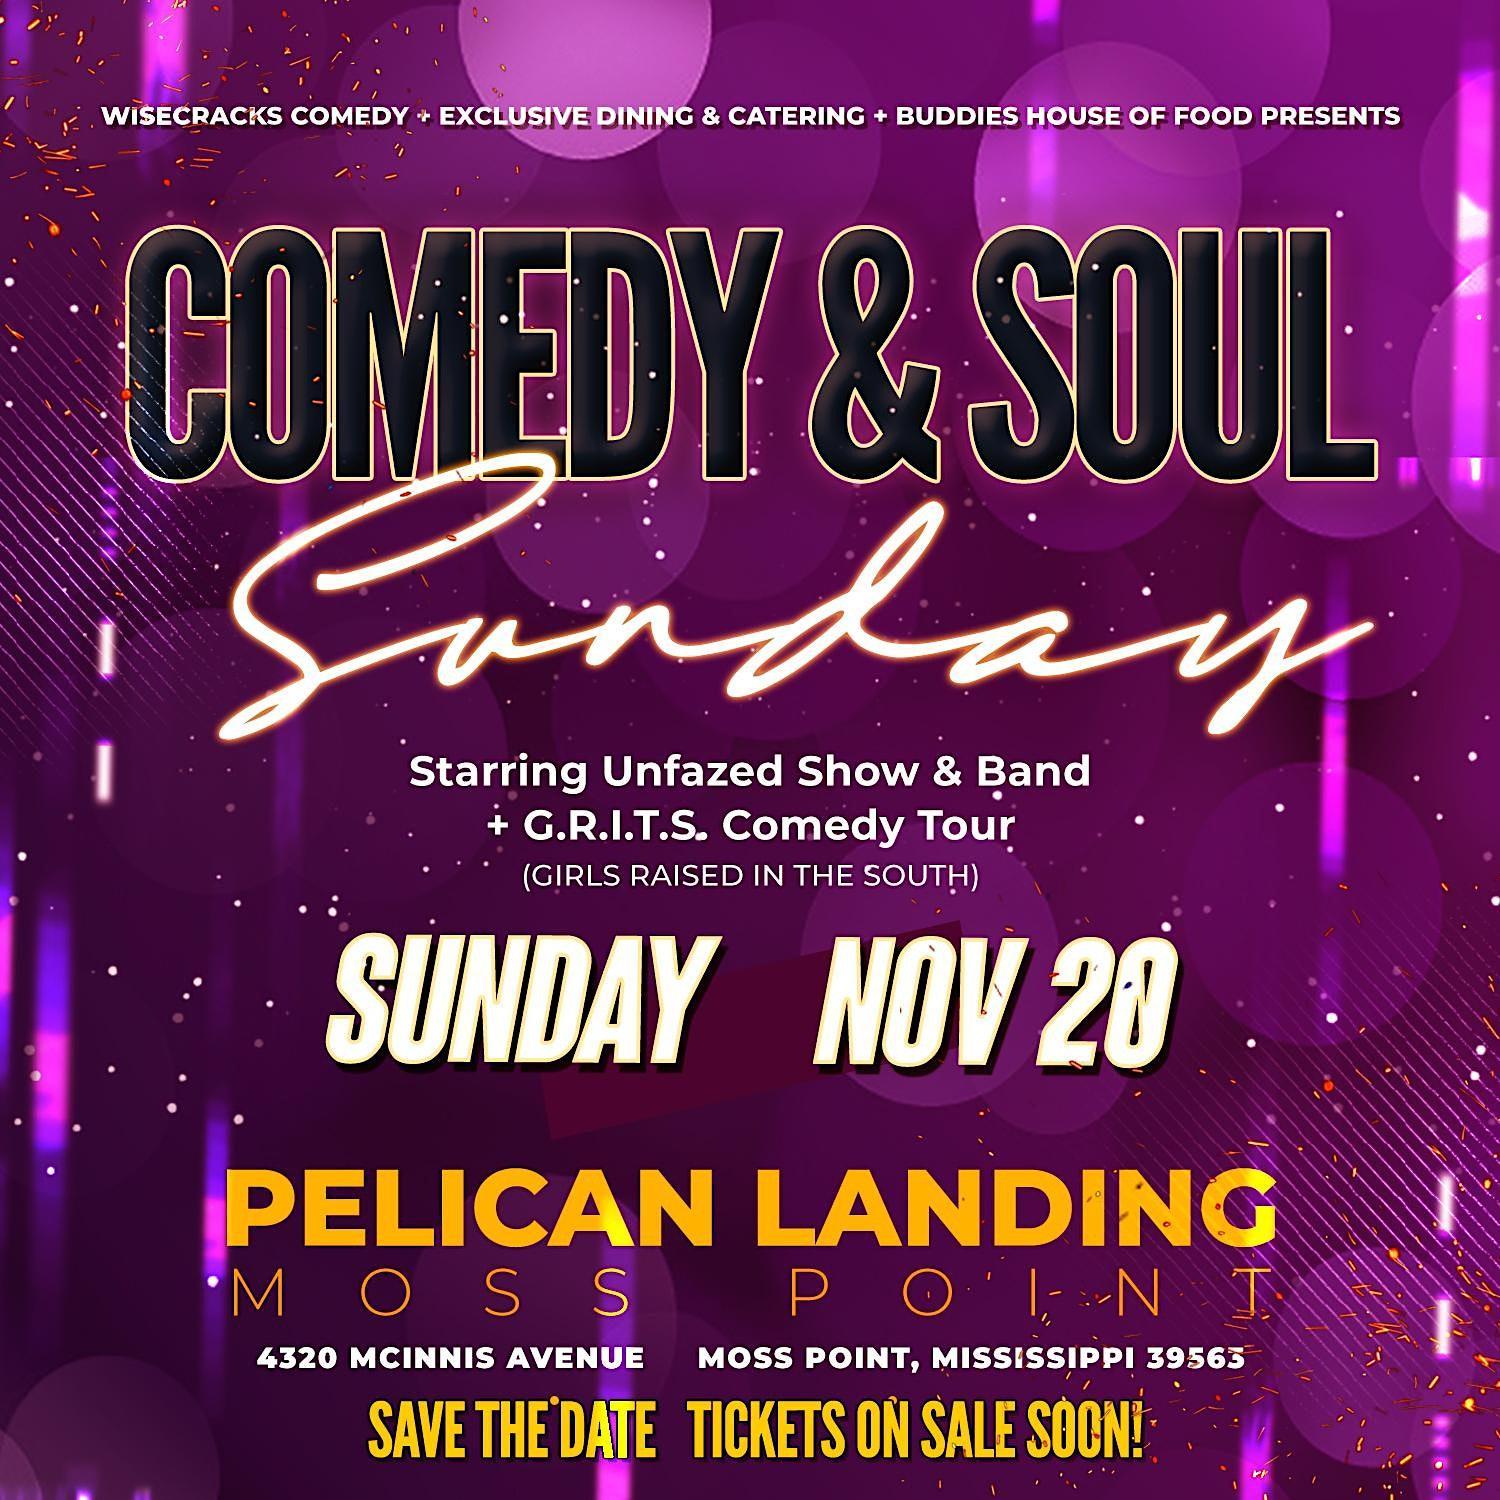 Comedy & Soul Sunday
Sun Nov 20, 7:00 PM - Sun Nov 20, 7:00 PM
in 16 days